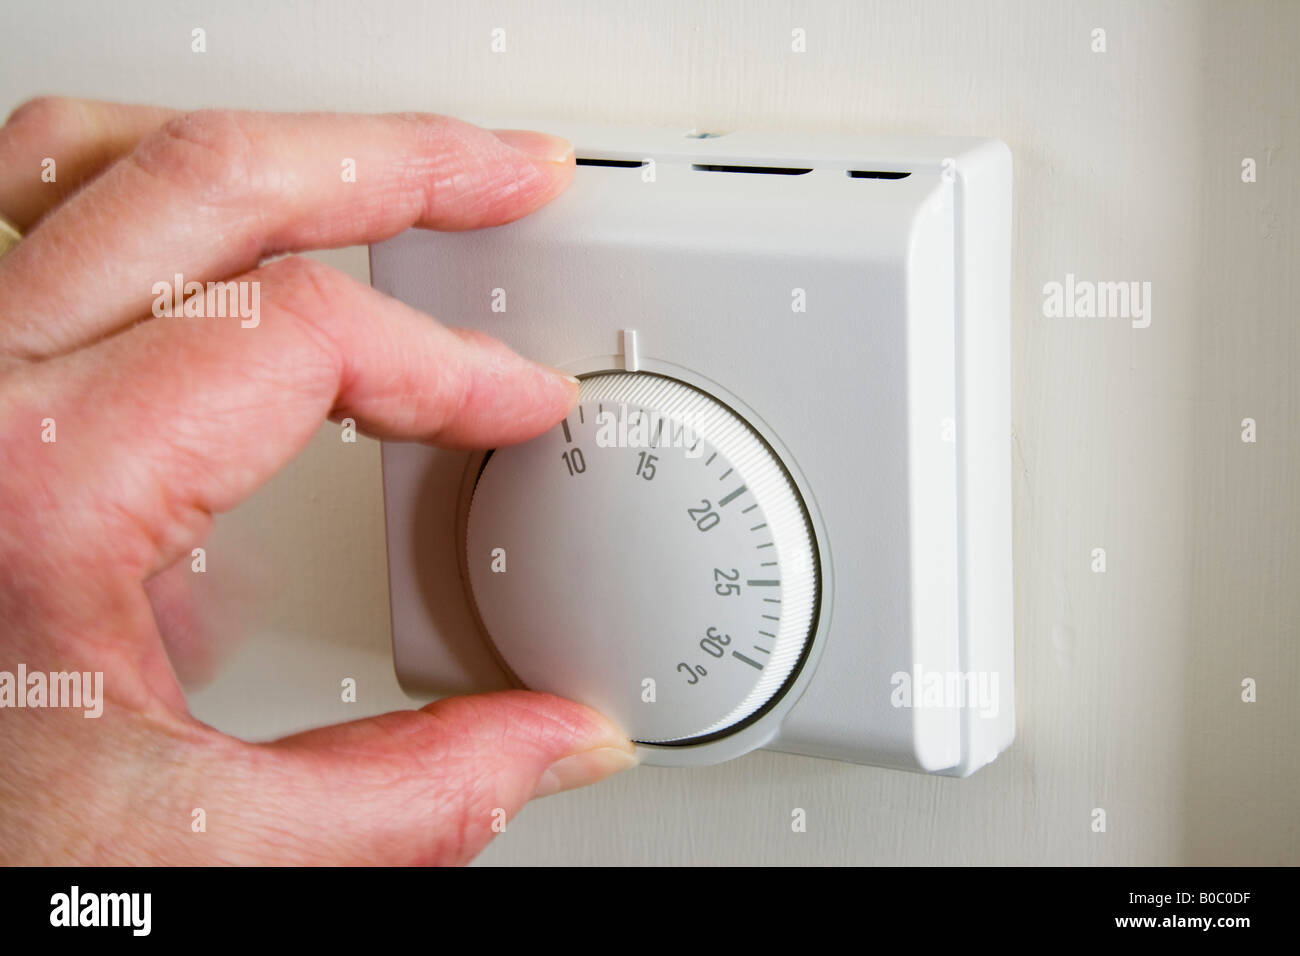 Rentner von Hand drehen nach unten Home zentrale Heizung Thermostat bei niedriger Temperatur ein Haushalt Energiekosten und CO2-Ausstoß zu reduzieren. England Großbritannien Stockfoto